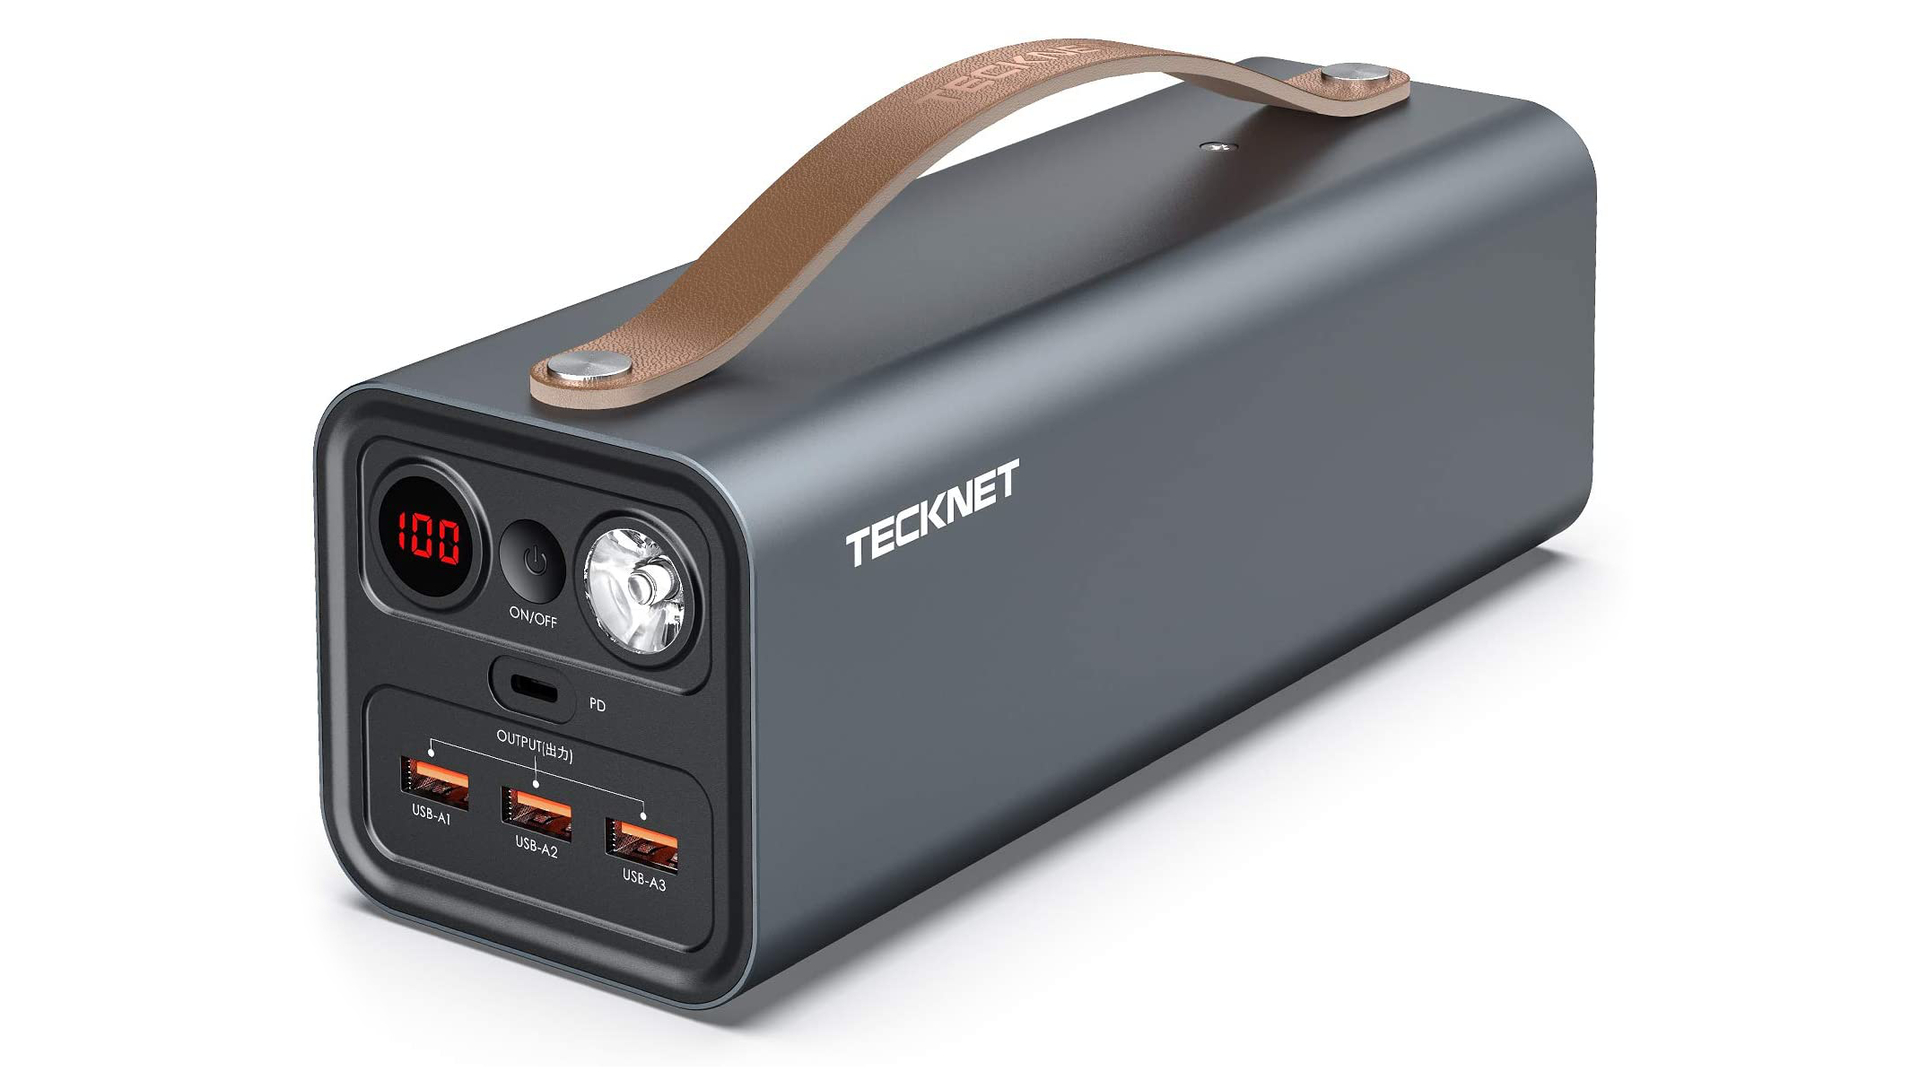 Tecknet便携式笔记本电脑充电器